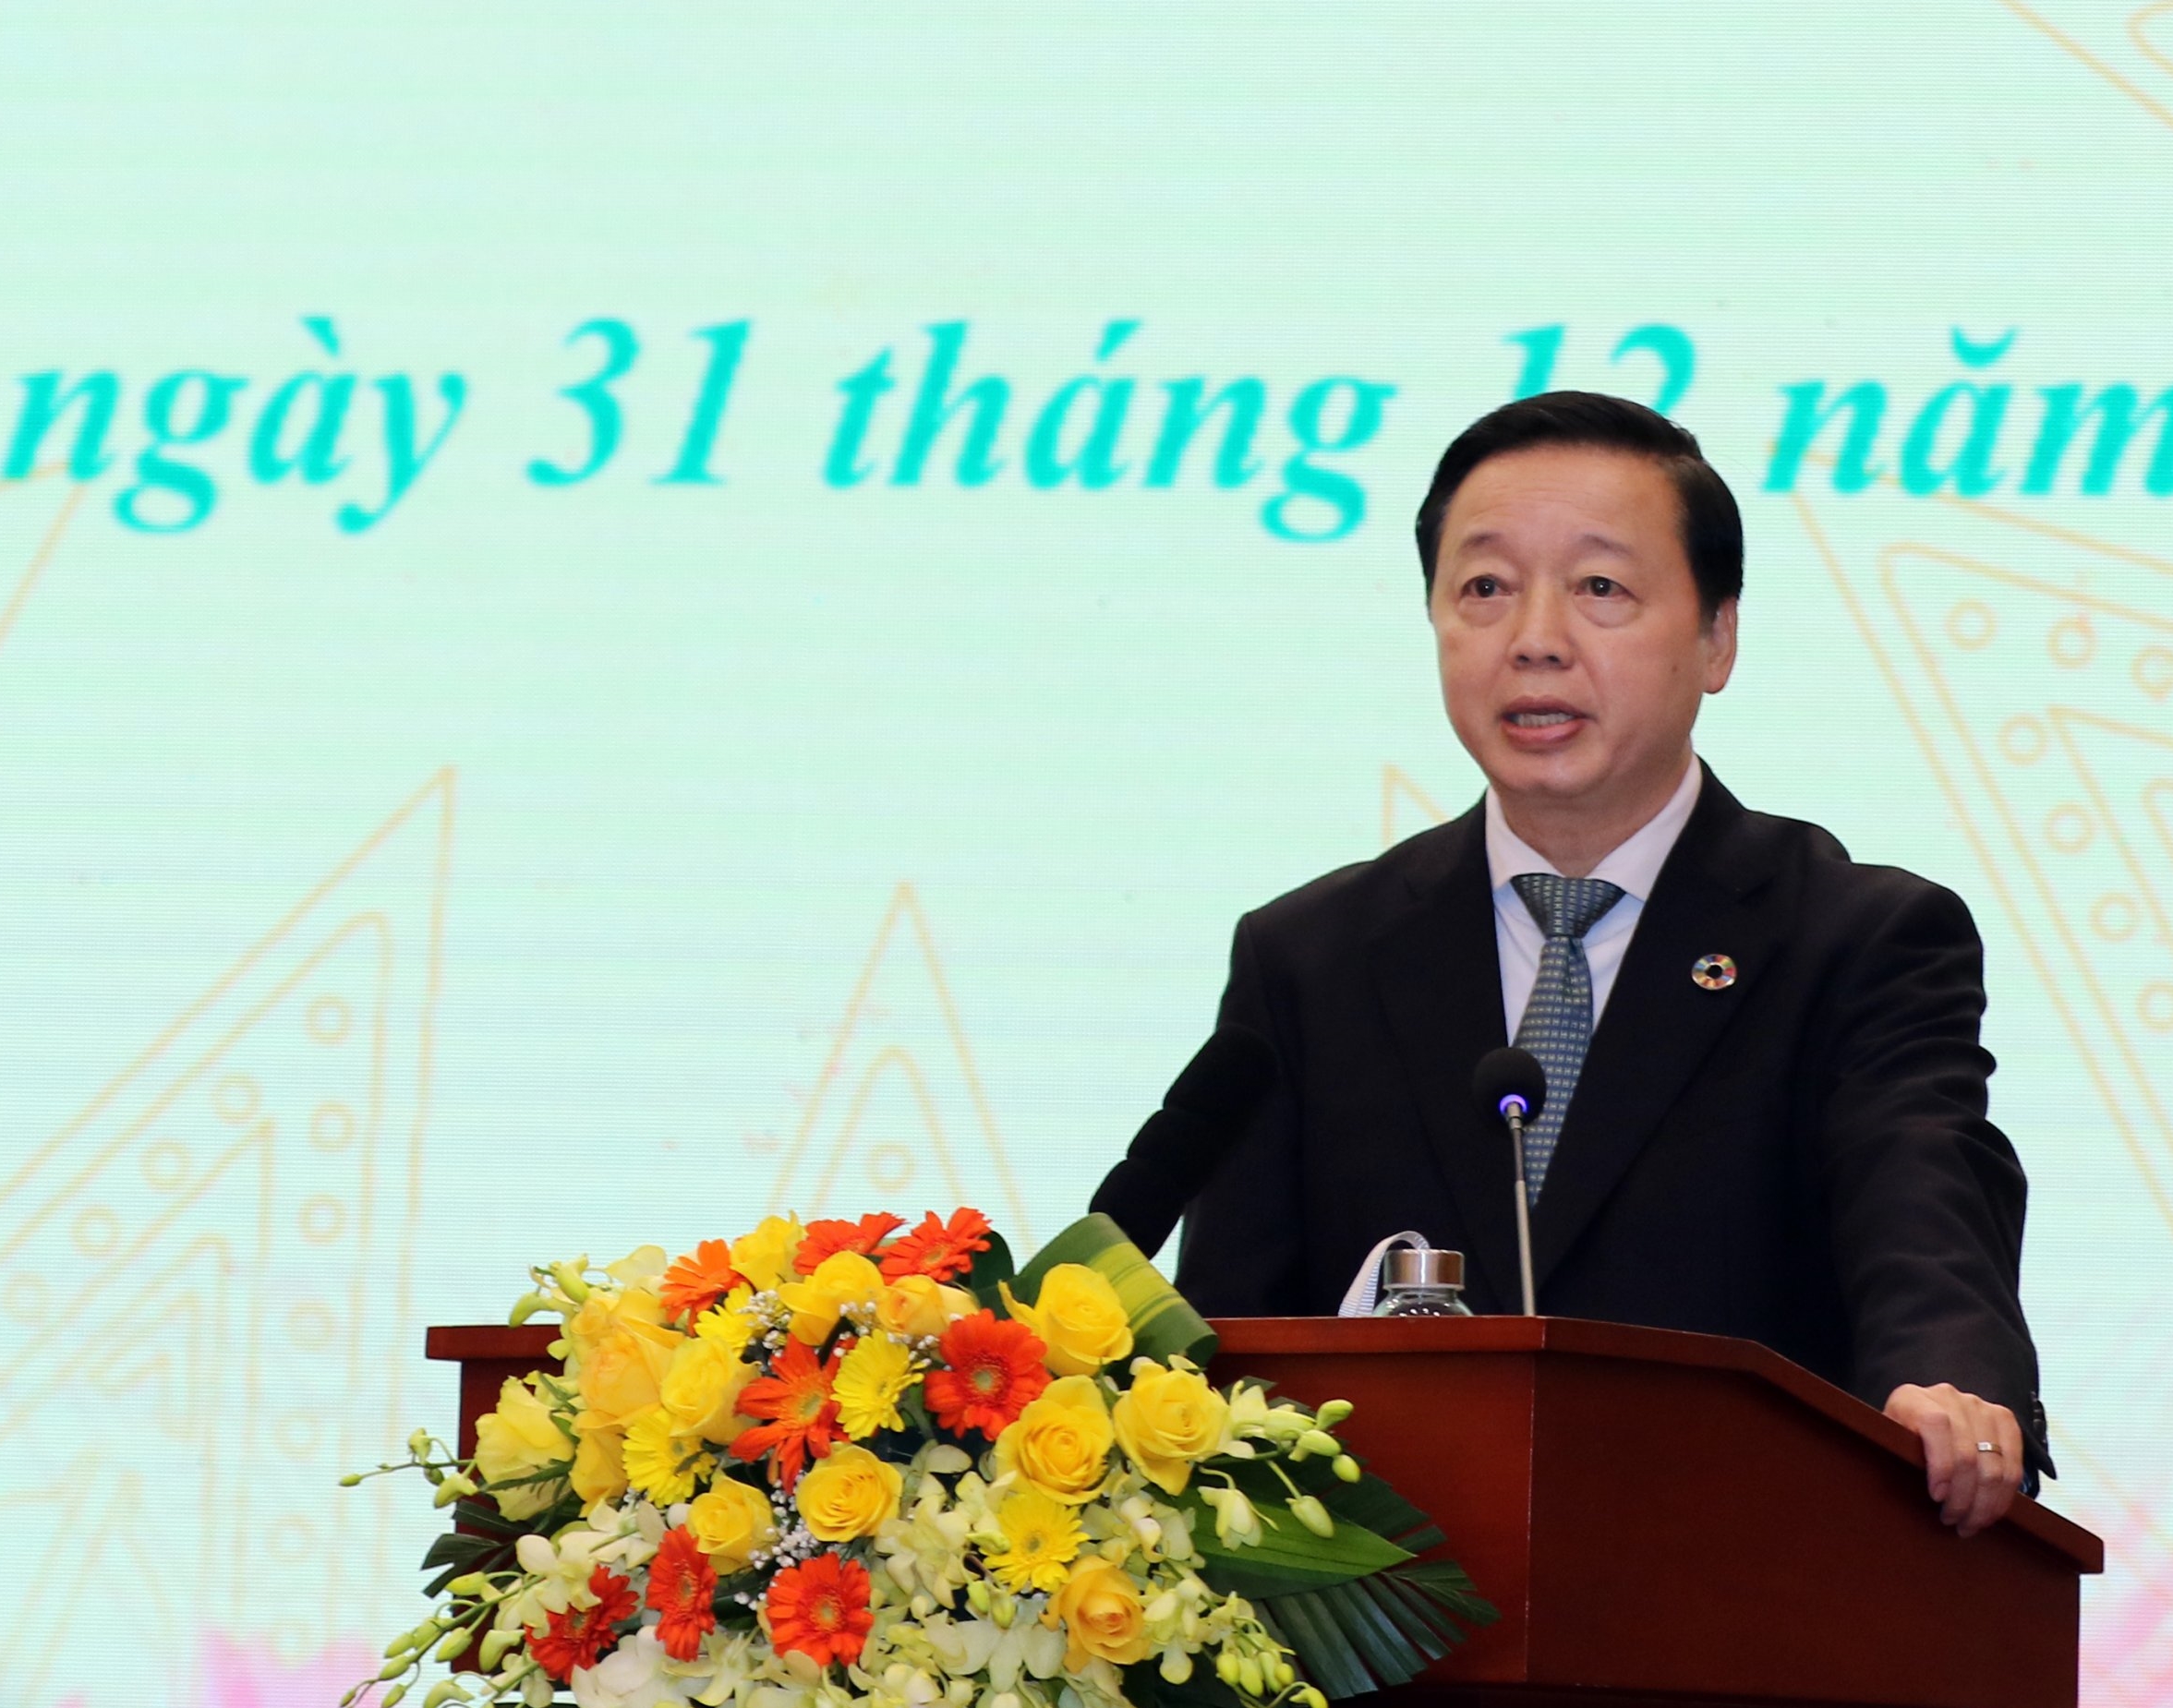 Bộ trưởng Bộ Tài nguyên và Môi trường Trần Hồng Hà phát biểu khai mạc Hội nghị